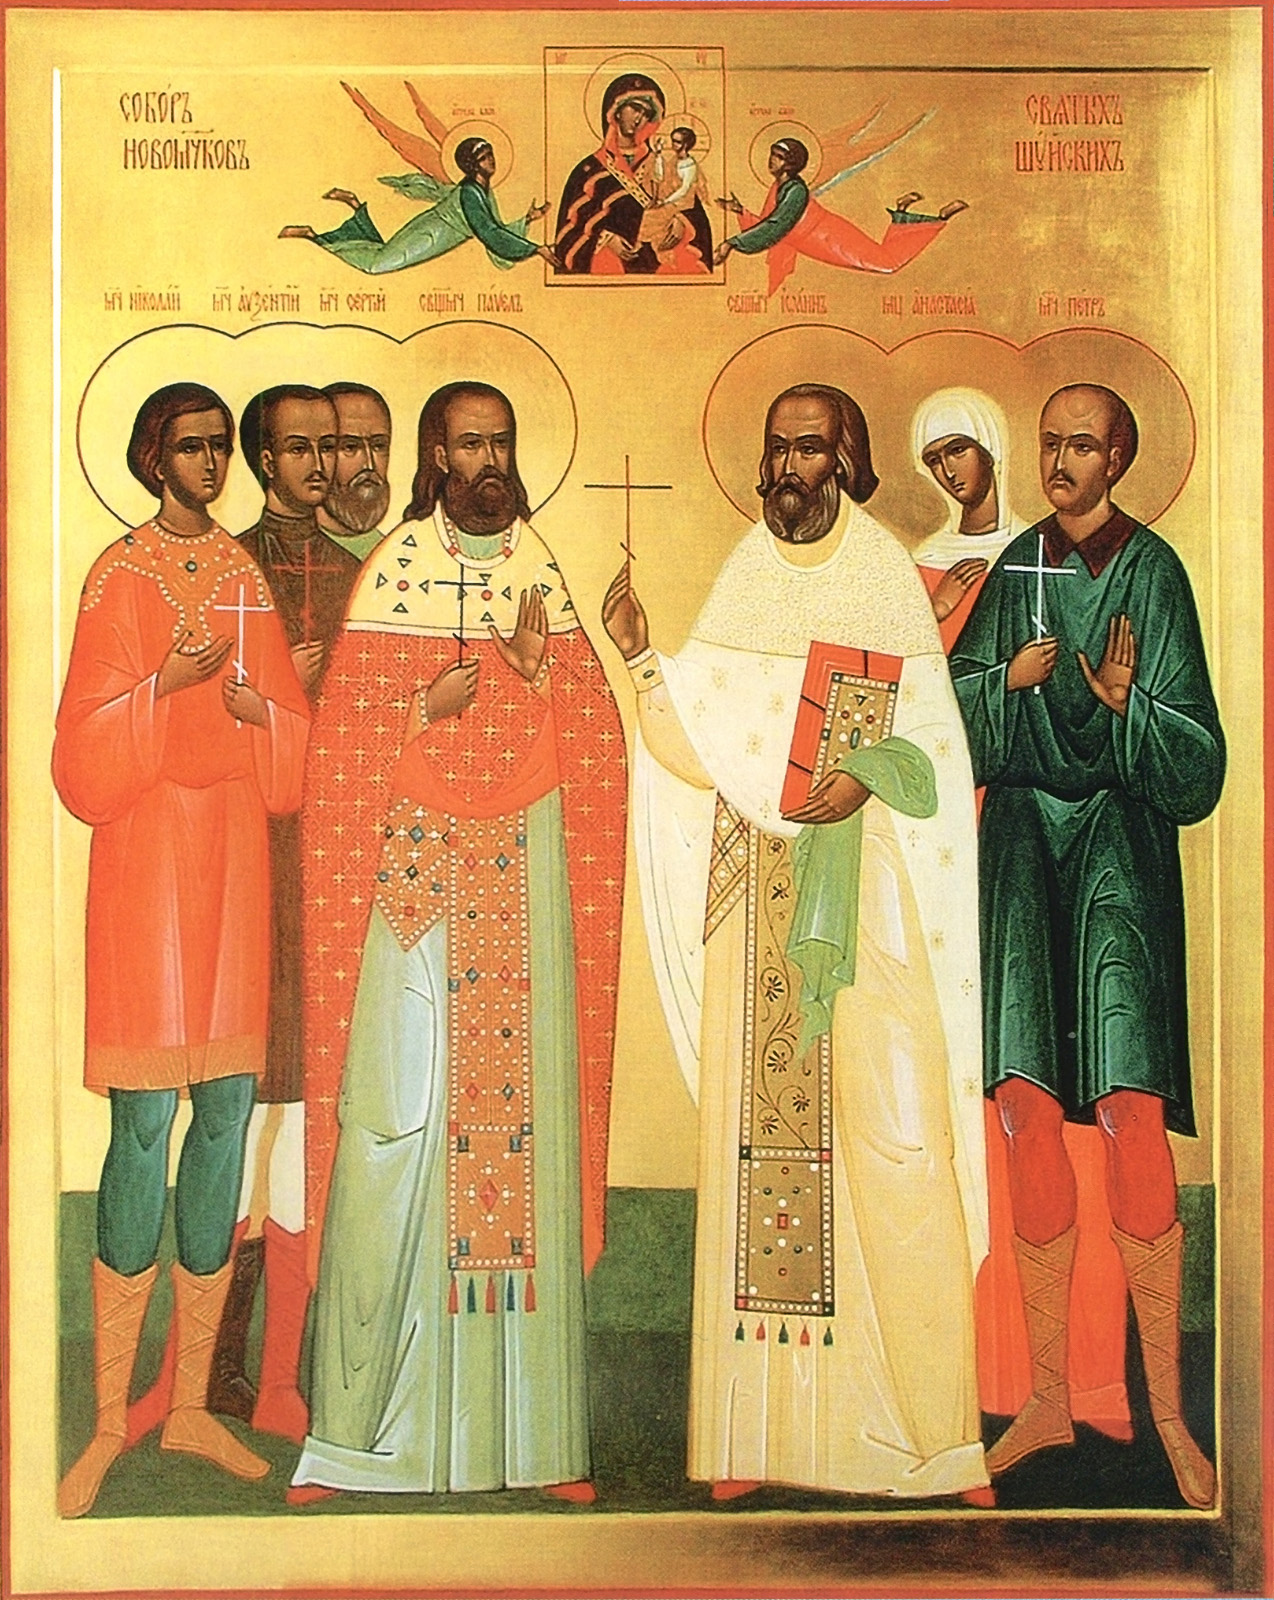 Святой новомученик российский. Шуйские новомученики икона. Шуйские святые новомученики 1922.